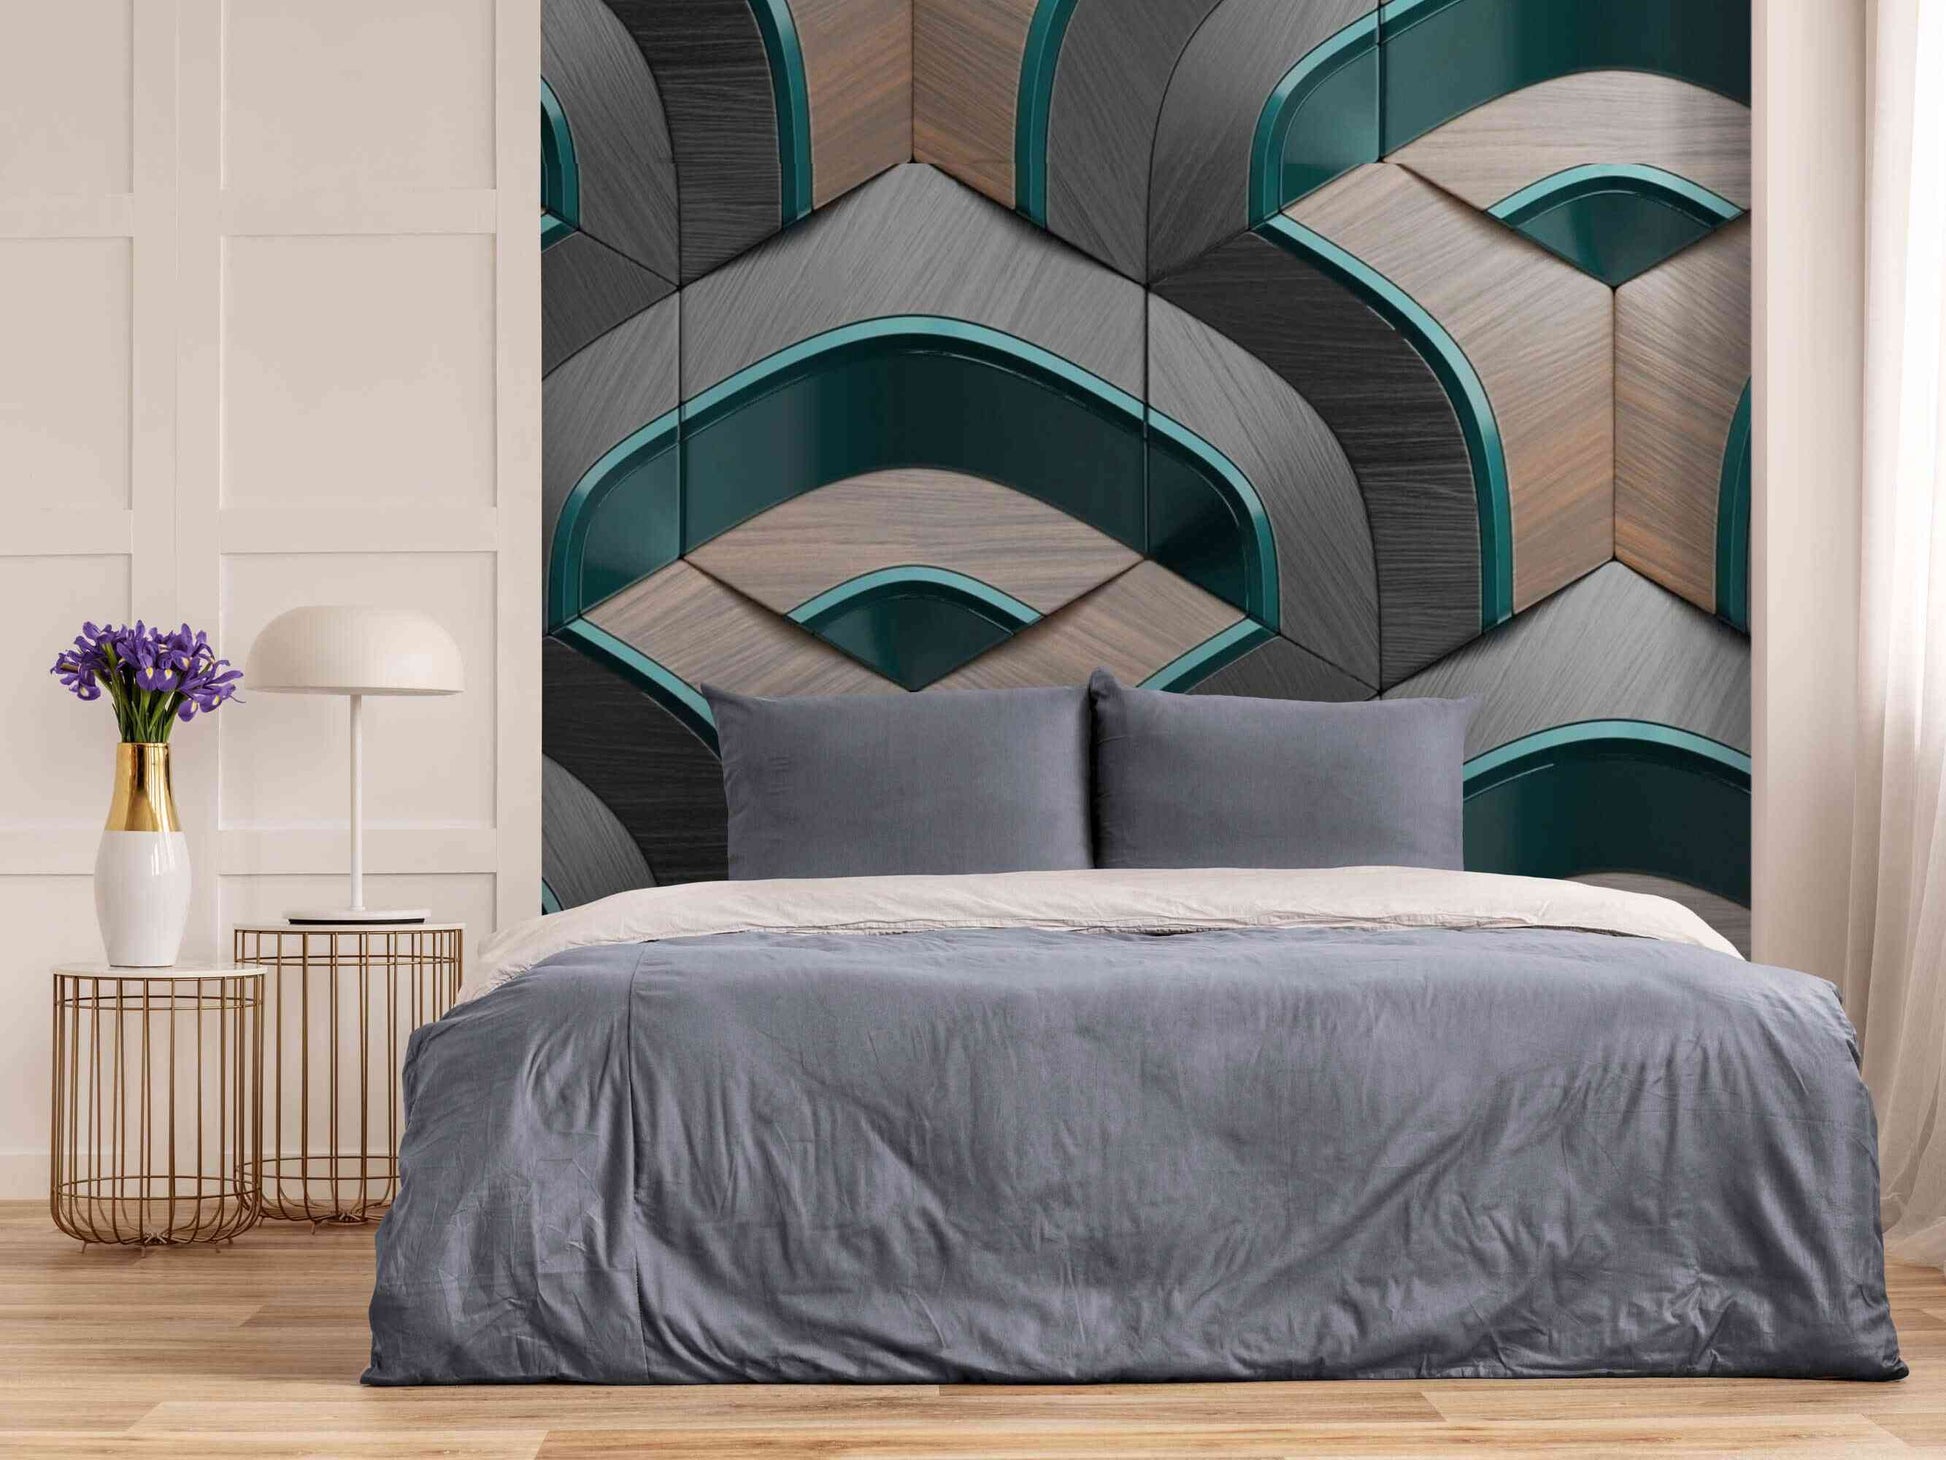 3D Wallpaper Mural in a Bedroom